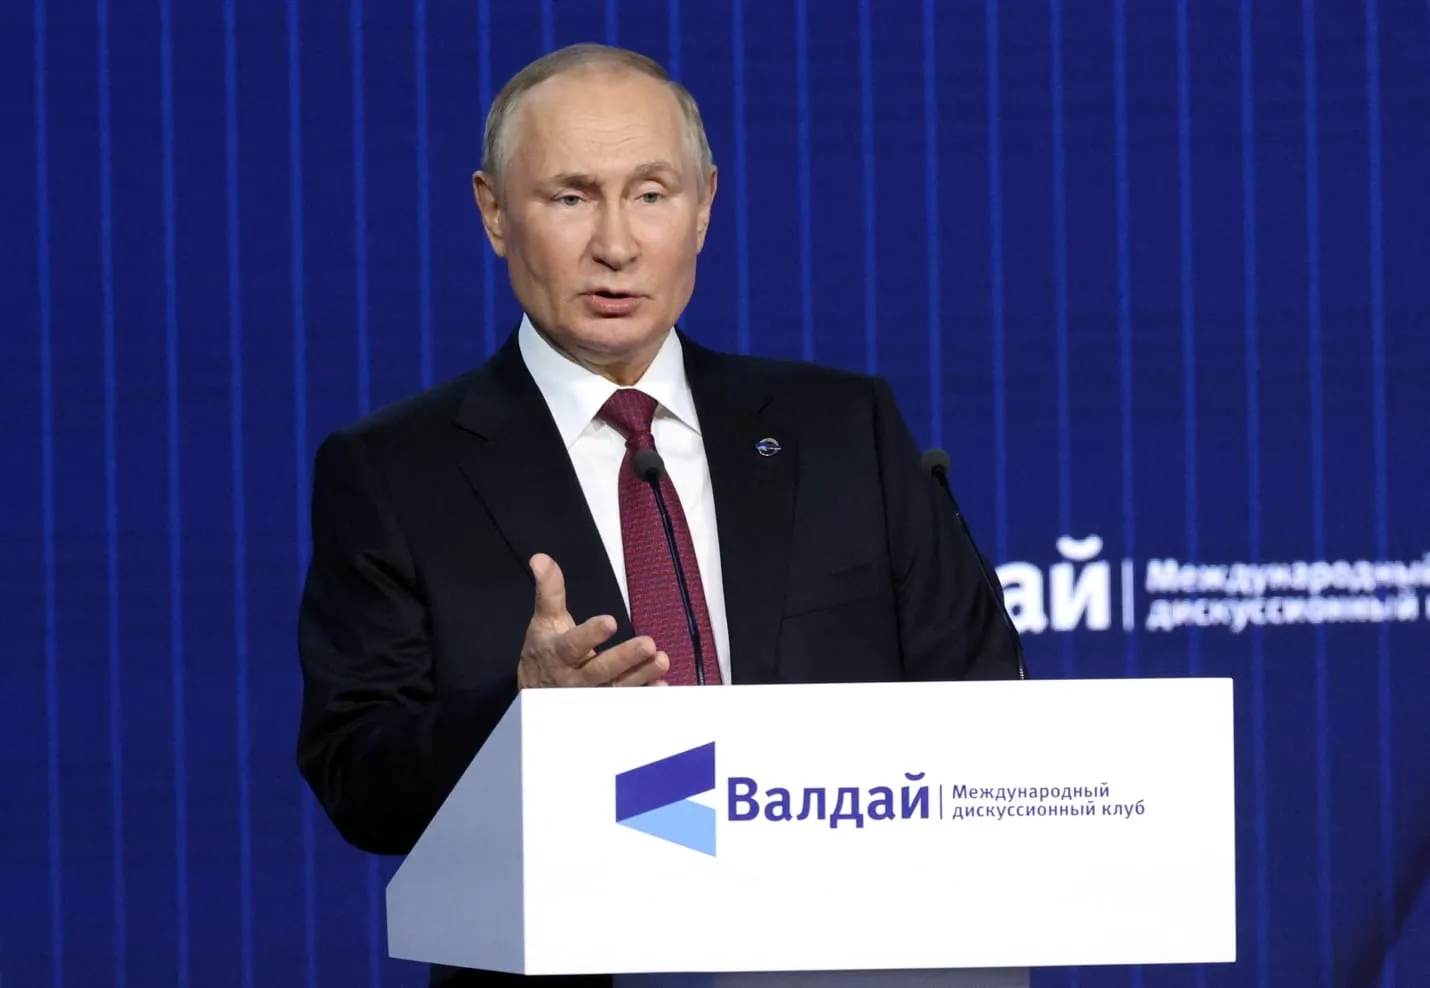 Tin thế giới sáng 28/10: Tổng thống Nga Putin phát biểu chỉ trích phương Tây; Iran tuyên bố đáp trả phần tử khủng bố